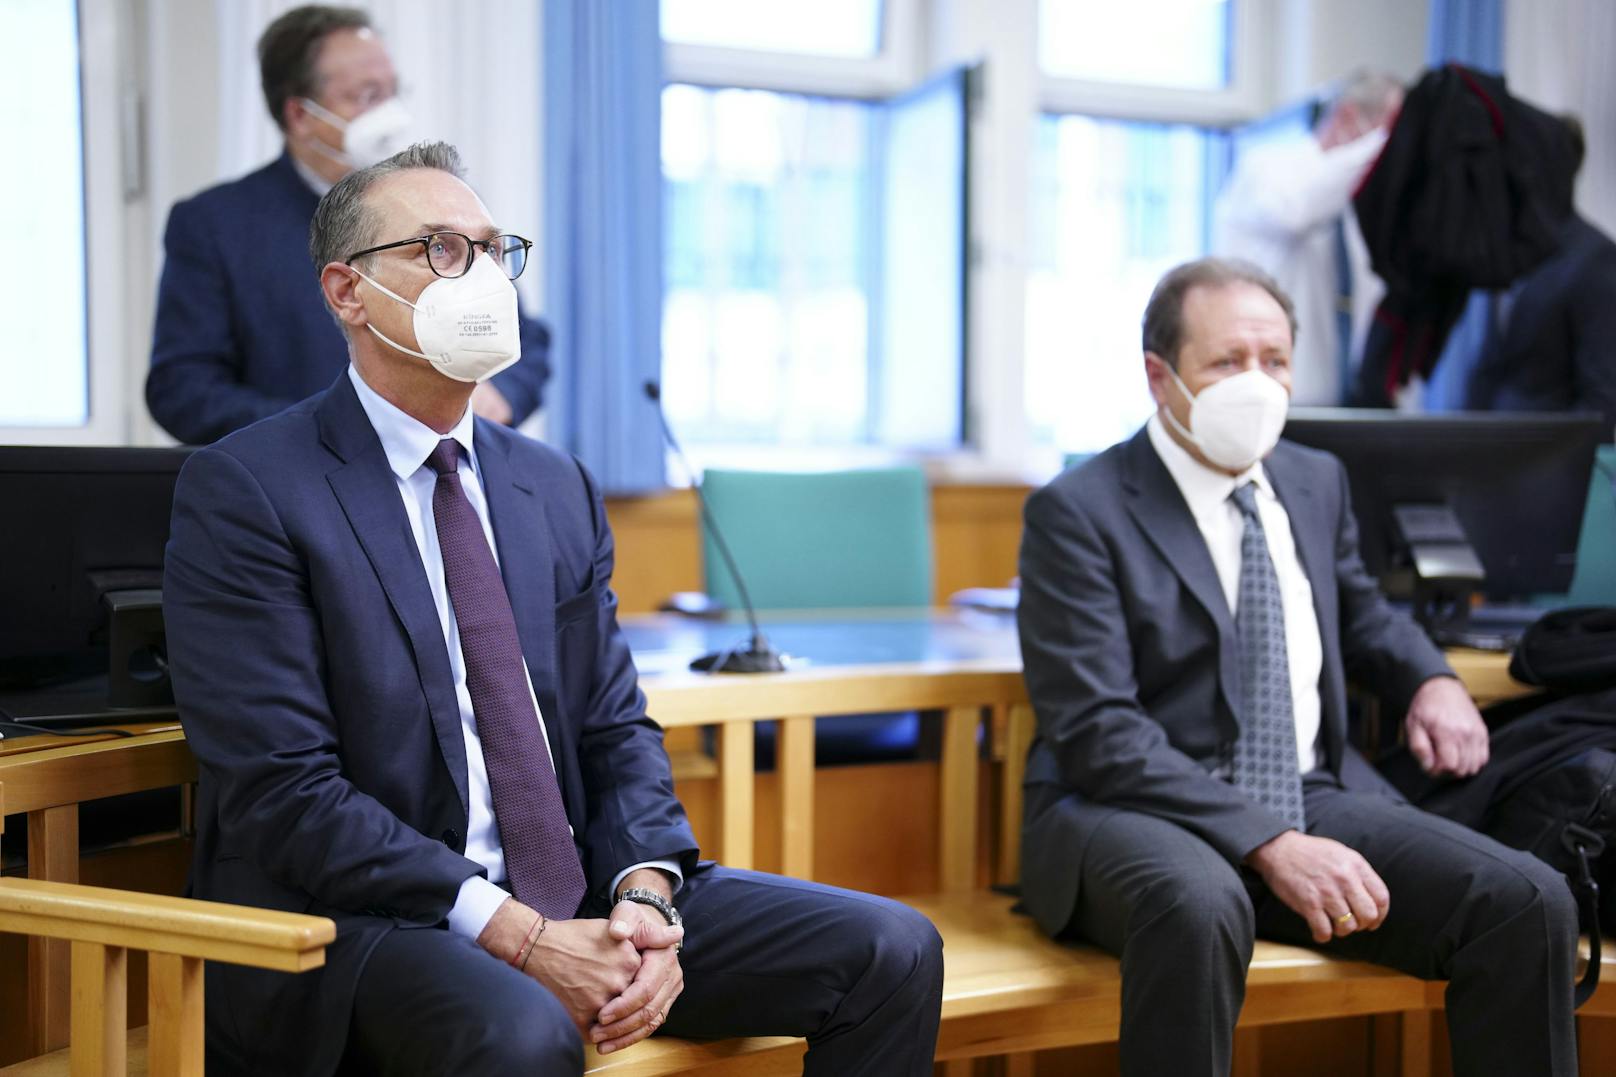 Der Ex-FPÖ-Chef war wegen Bestechlichkeit angeklagt und stand bereits zum zweiten Mal vor Gericht.